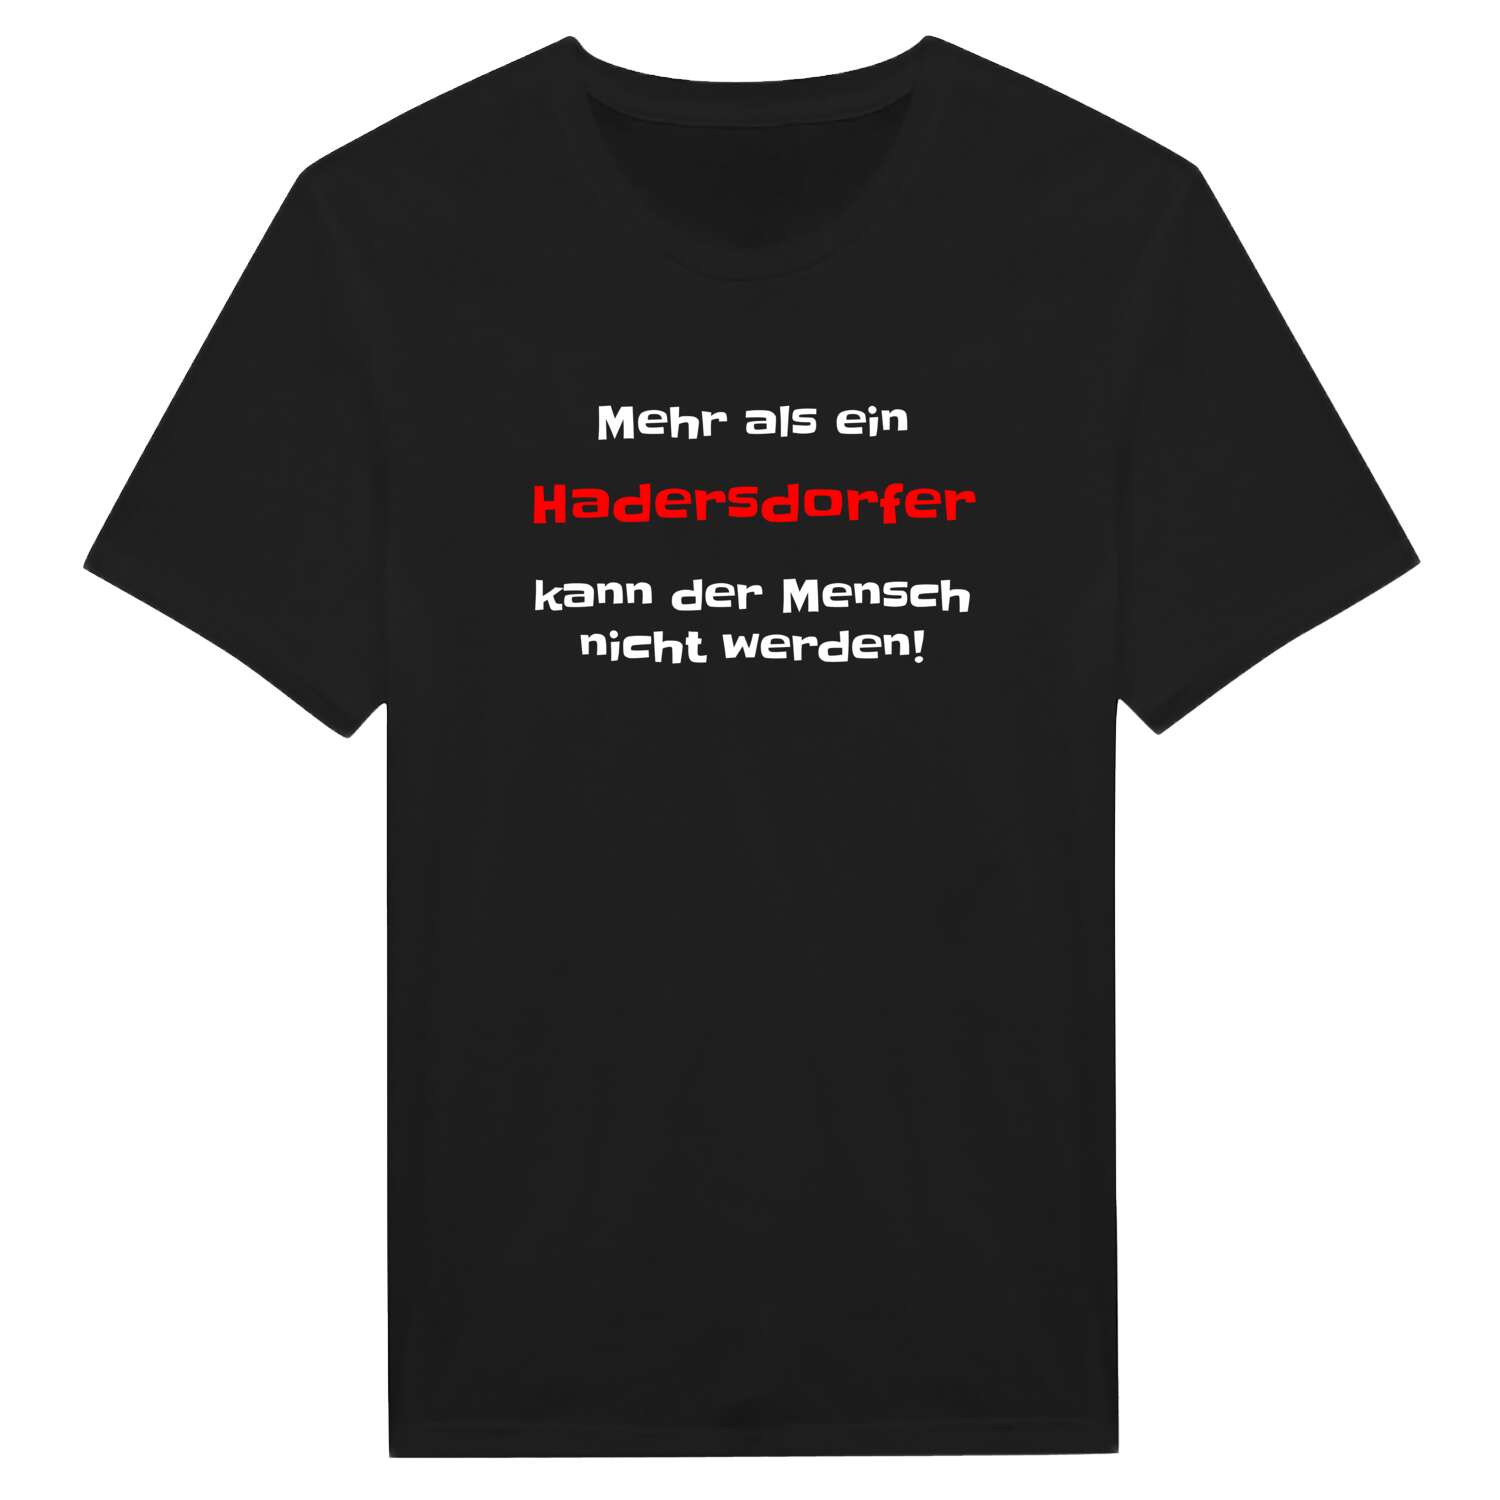 Hadersdorf T-Shirt »Mehr als ein«